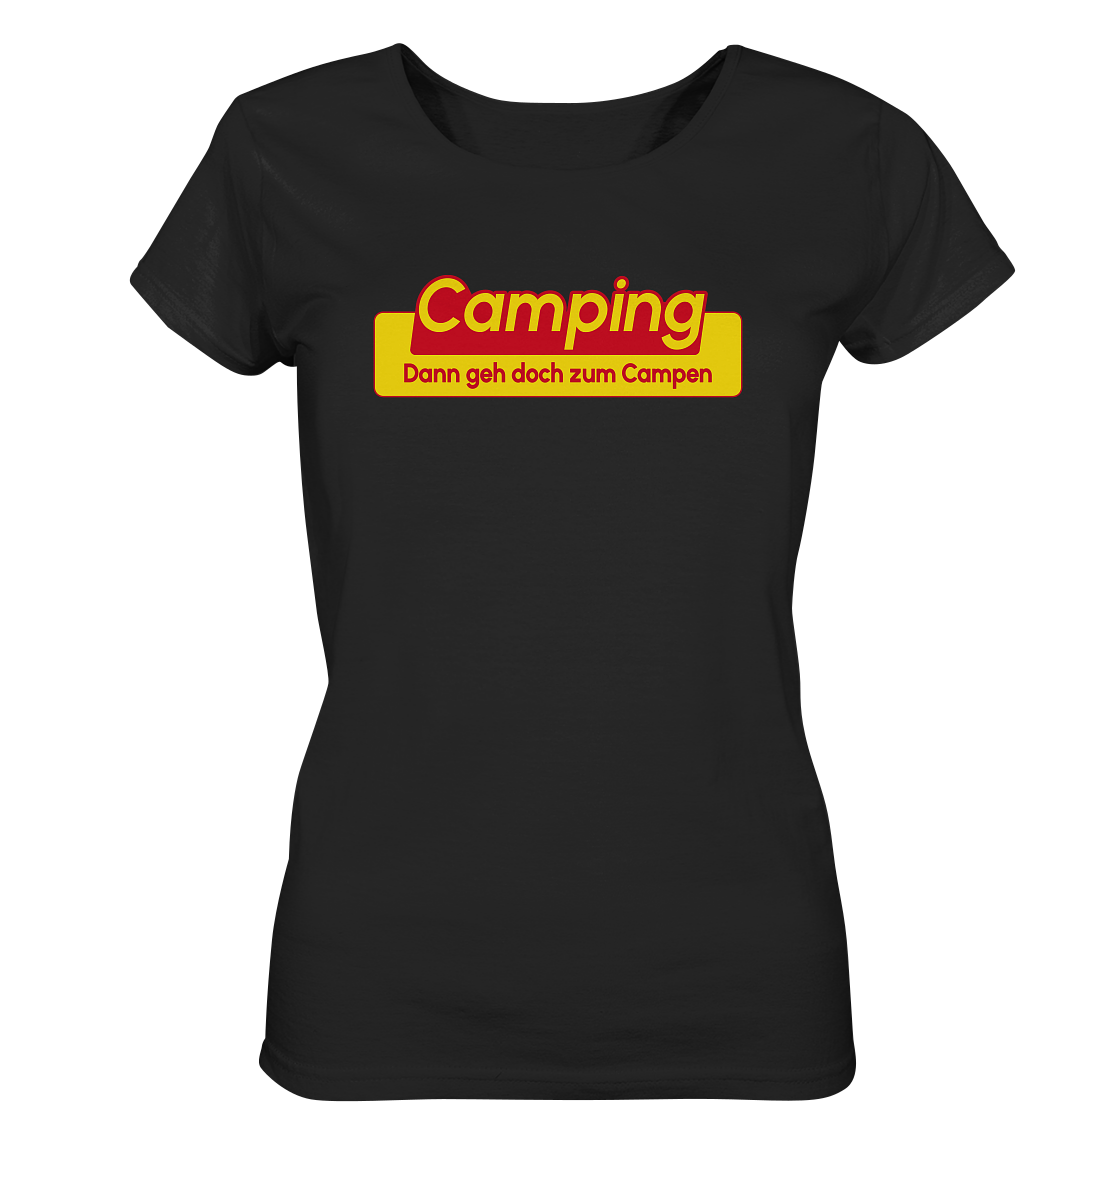 Dann geh doch zum Campen! - Ladies Organic Shirt